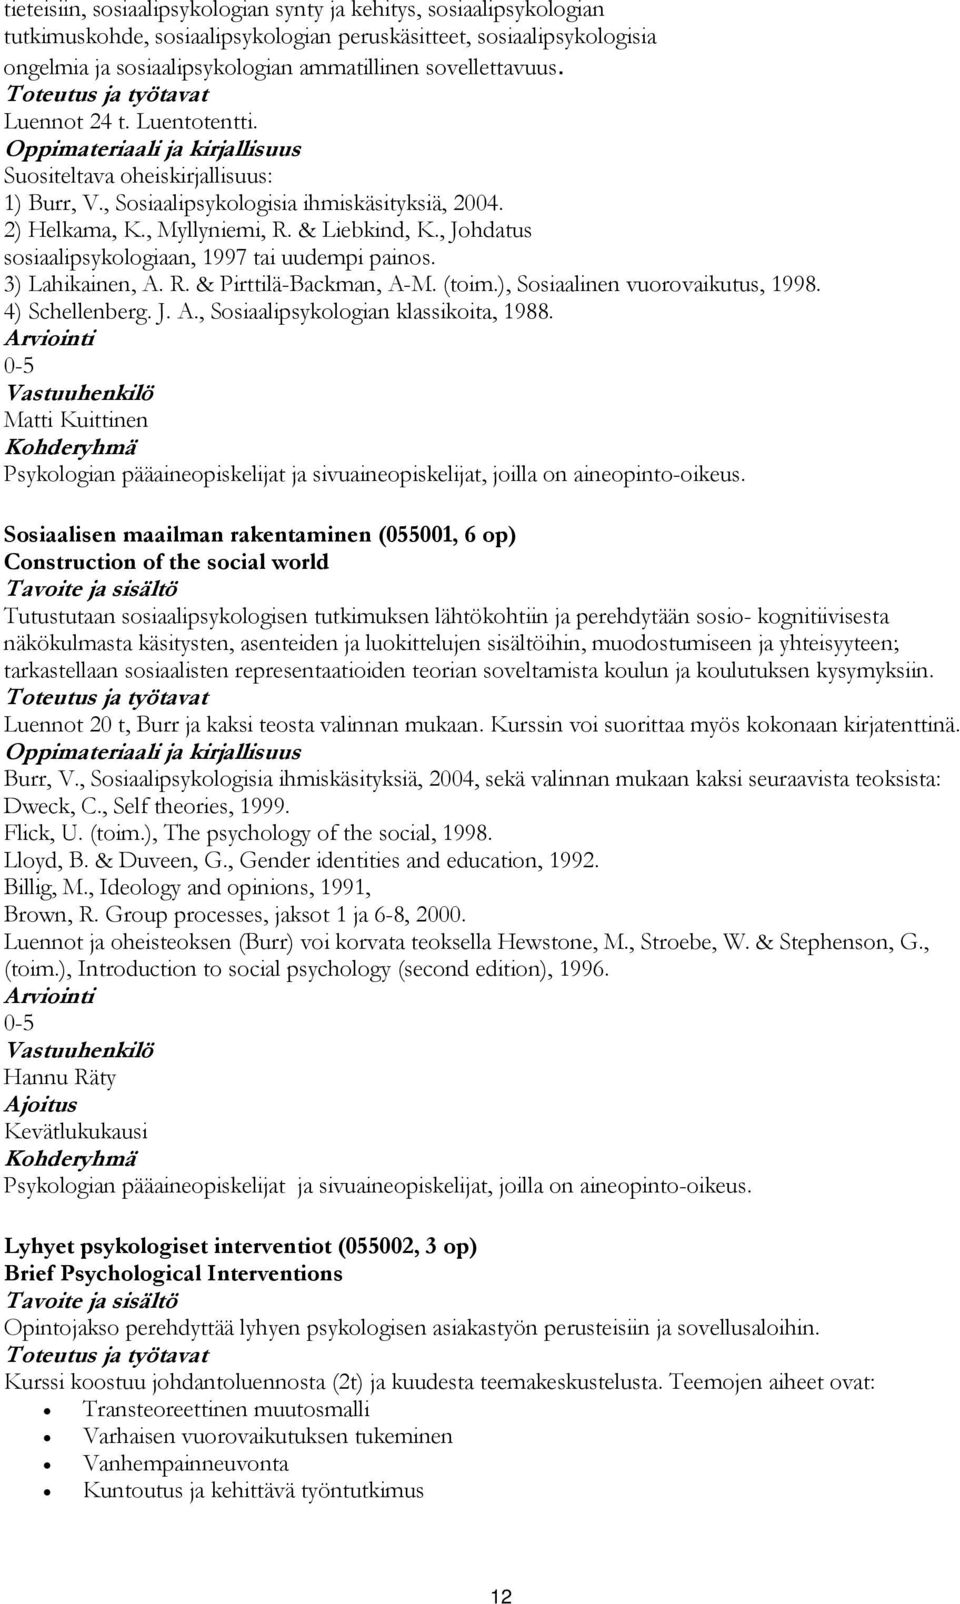 , Johdatus sosiaalipsykologiaan, 1997 tai uudempi painos. 3) Lahikainen, A. R. & Pirttilä-Backman, A-M. (toim.), Sosiaalinen vuorovaikutus, 1998. 4) Schellenberg. J. A., Sosiaalipsykologian klassikoita, 1988.